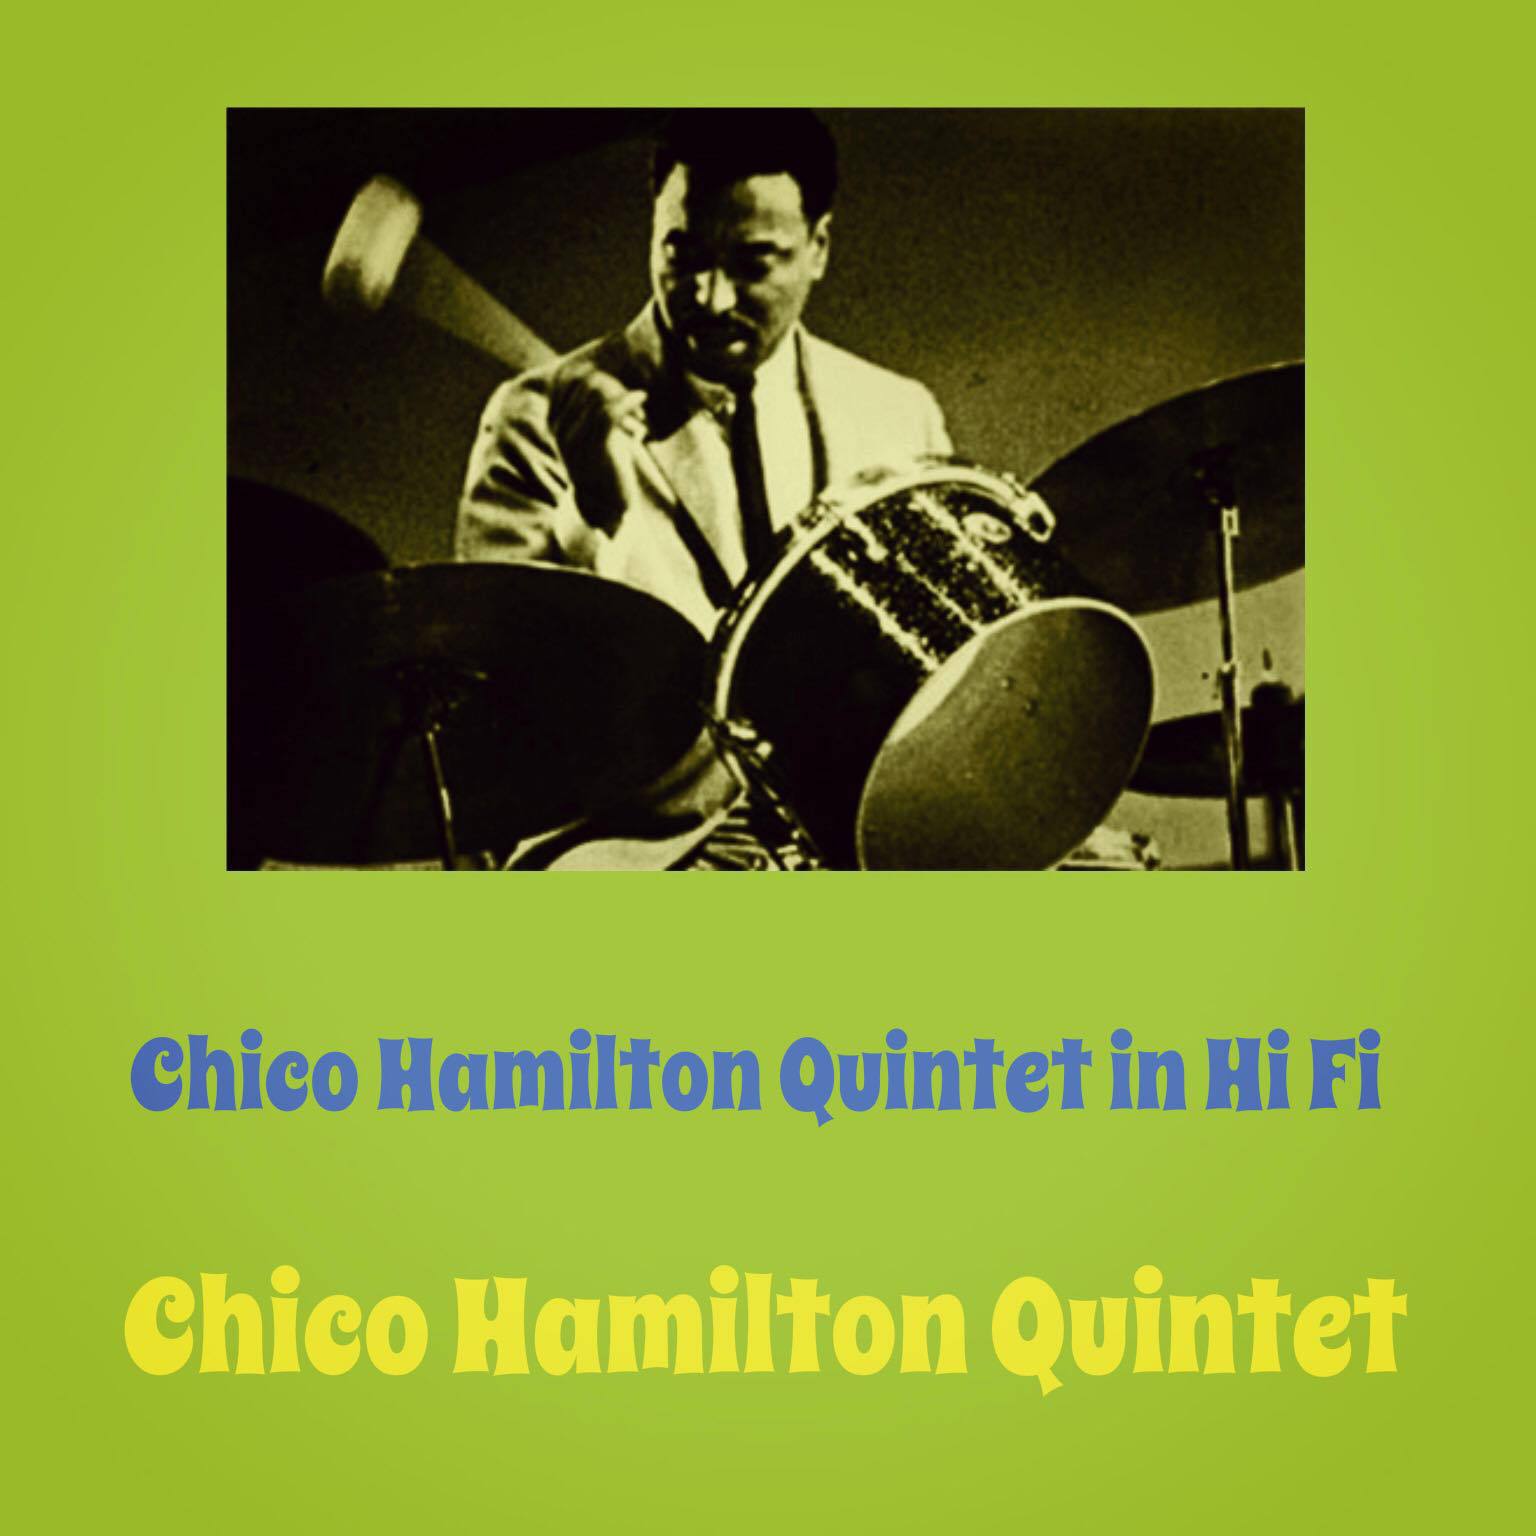 Chico Hamilton Quintet - Chrissie